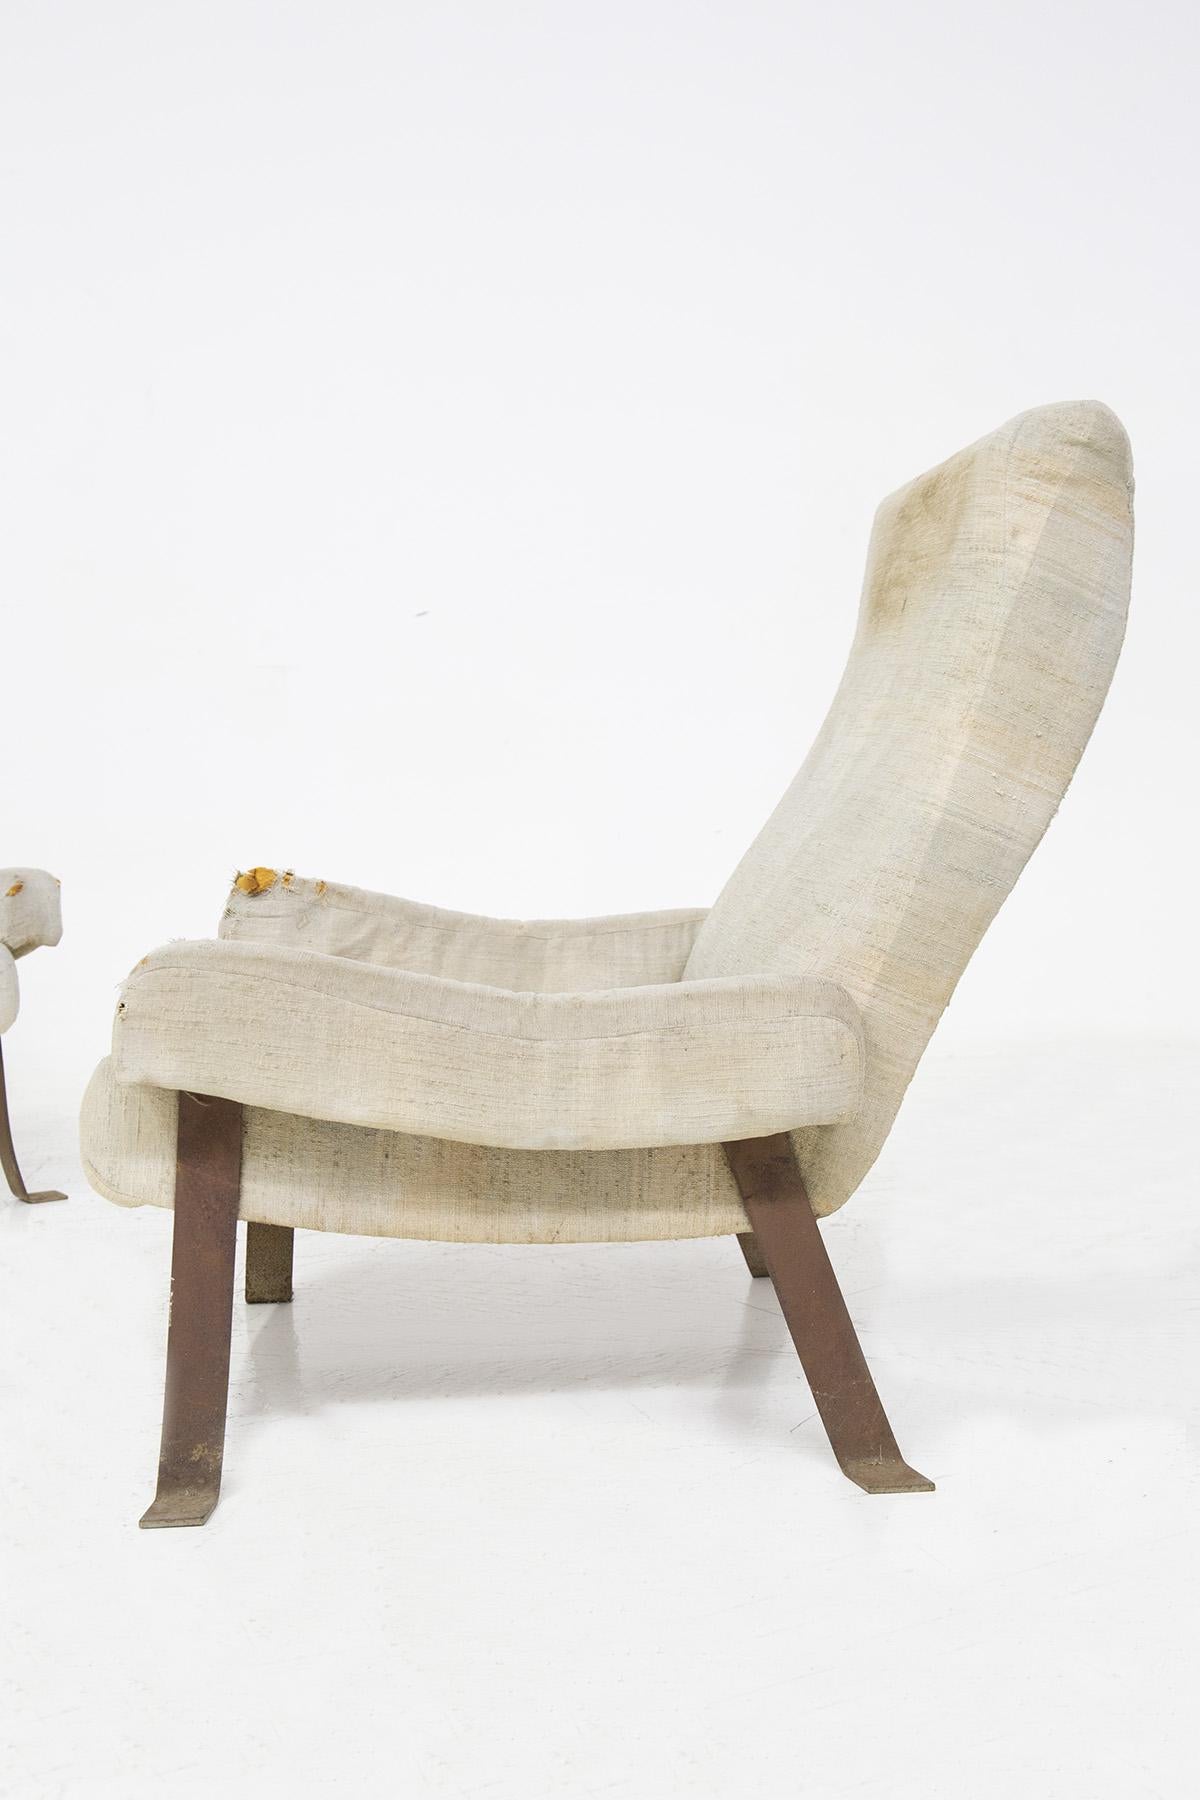 Seltenes Sesselpaar, entworfen von Piero Ranzani im Jahr 1966 für die italienische Edelmanufaktur Elam. Die Sessel sind Teil des Modells 